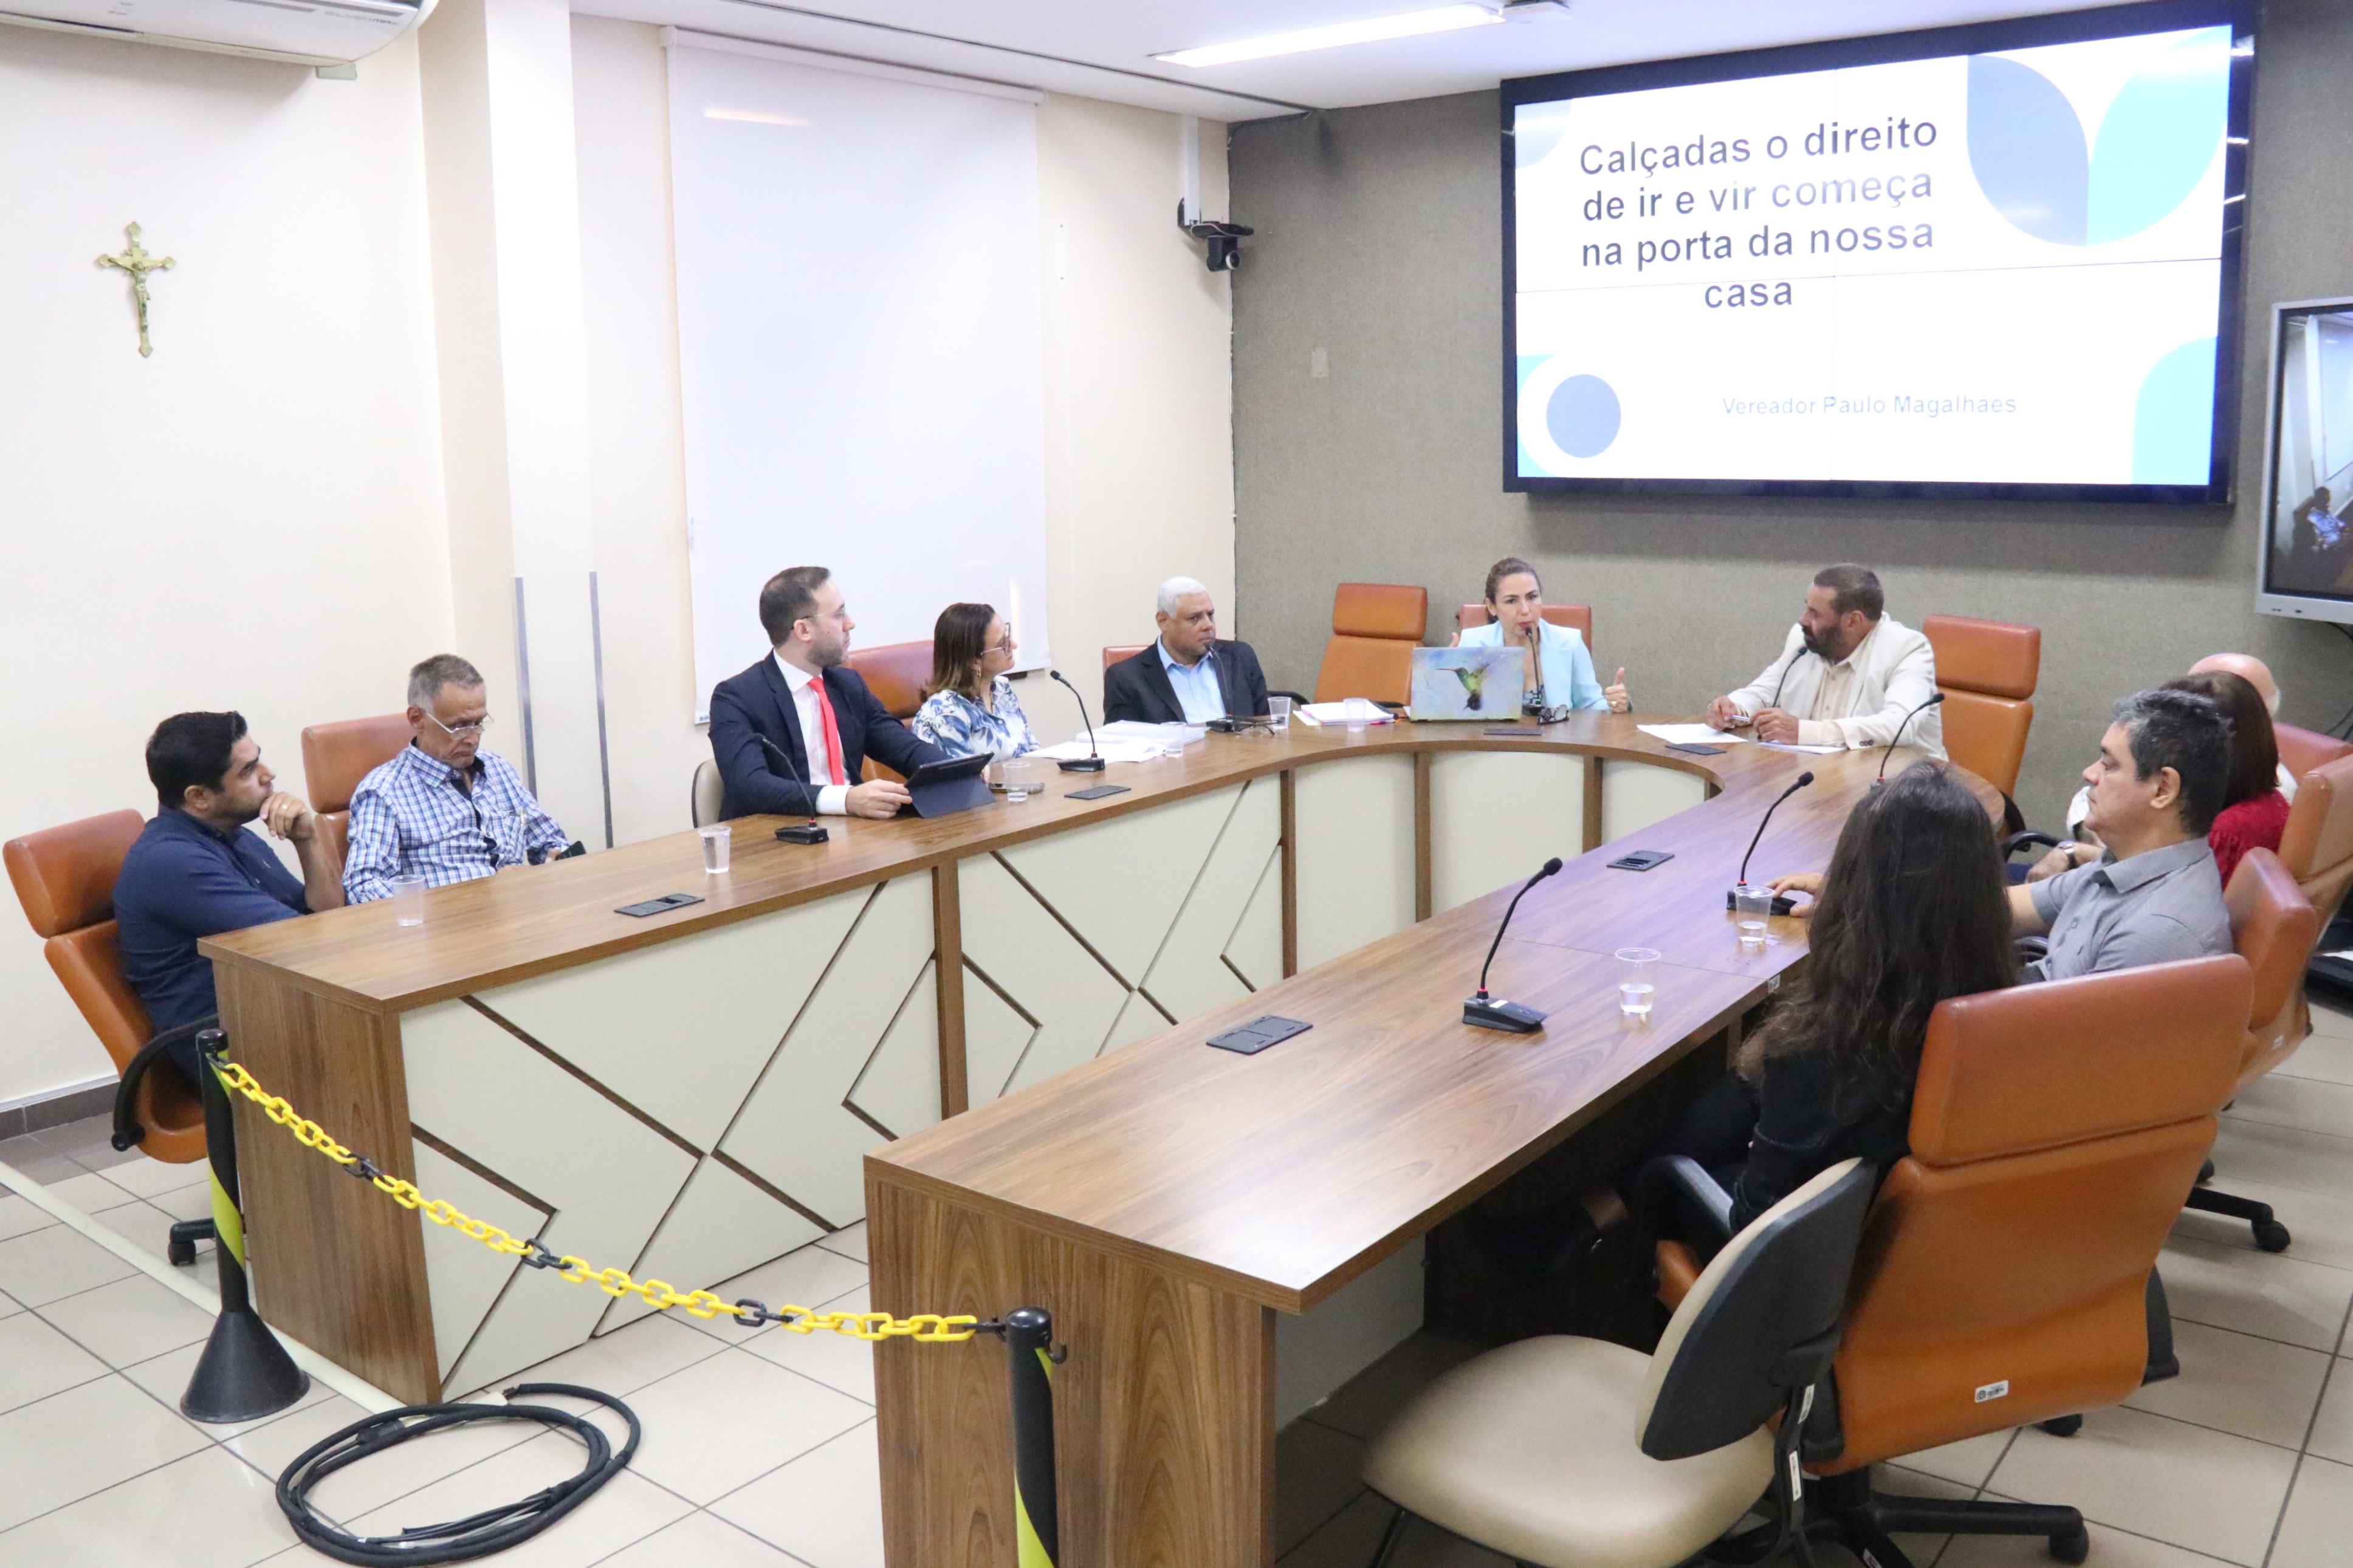 Câmara de Goiânia inicia debates sobre Lei das Calçadas